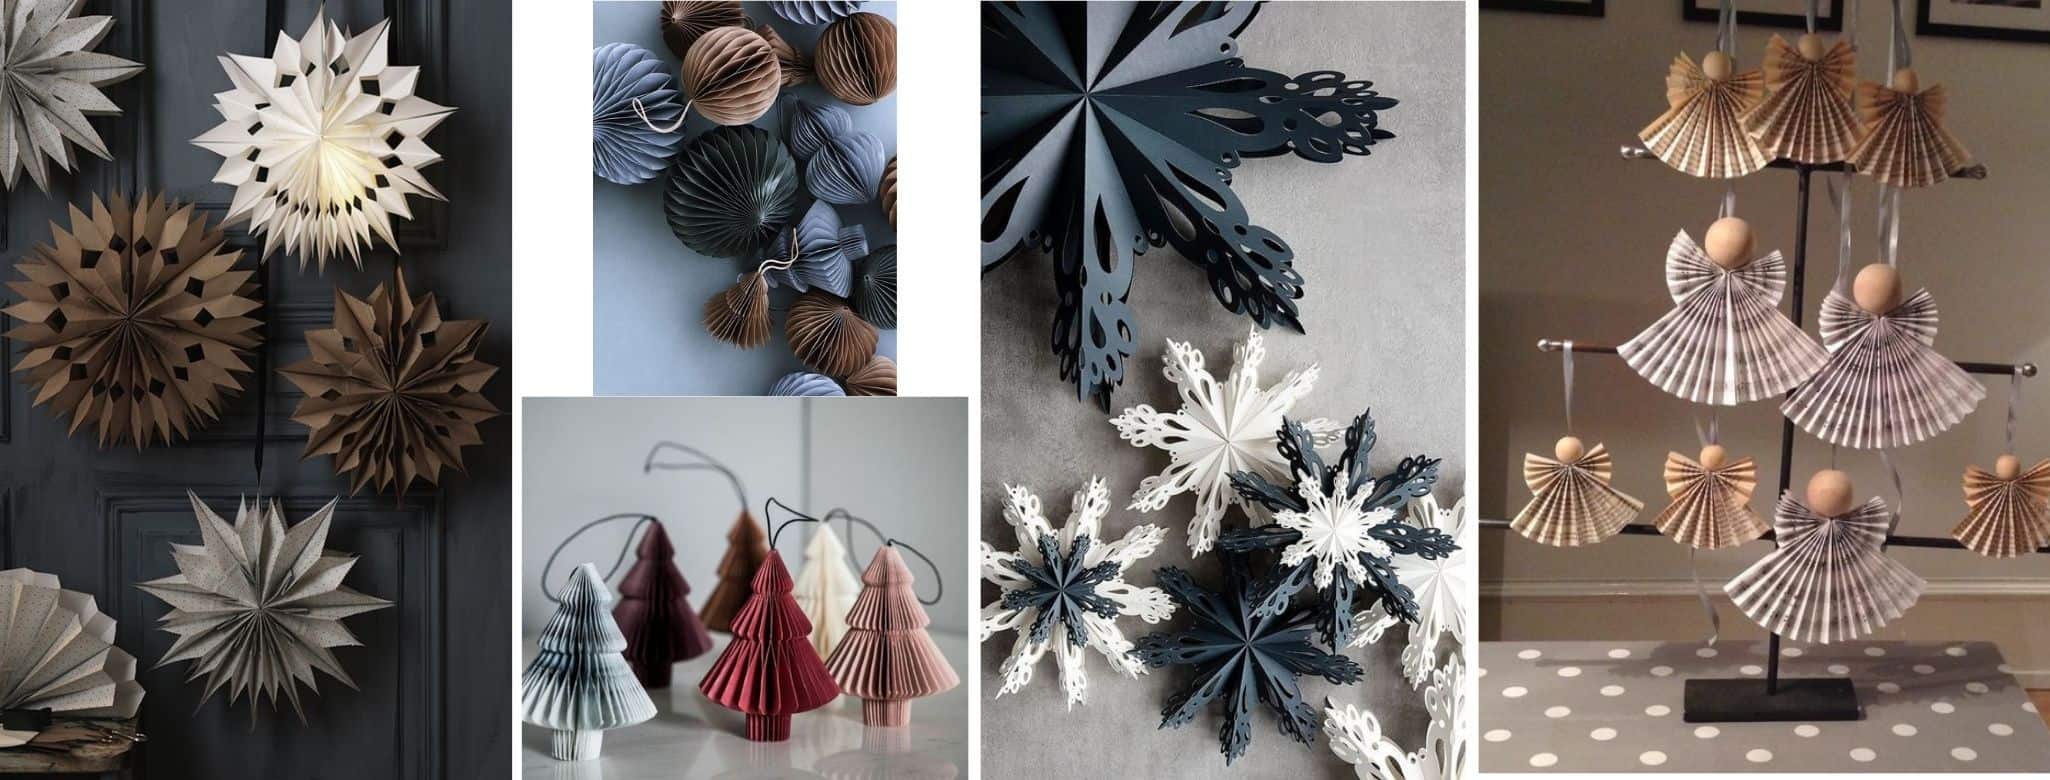 podoabe de Crăciun handmade - globulețe și figurine